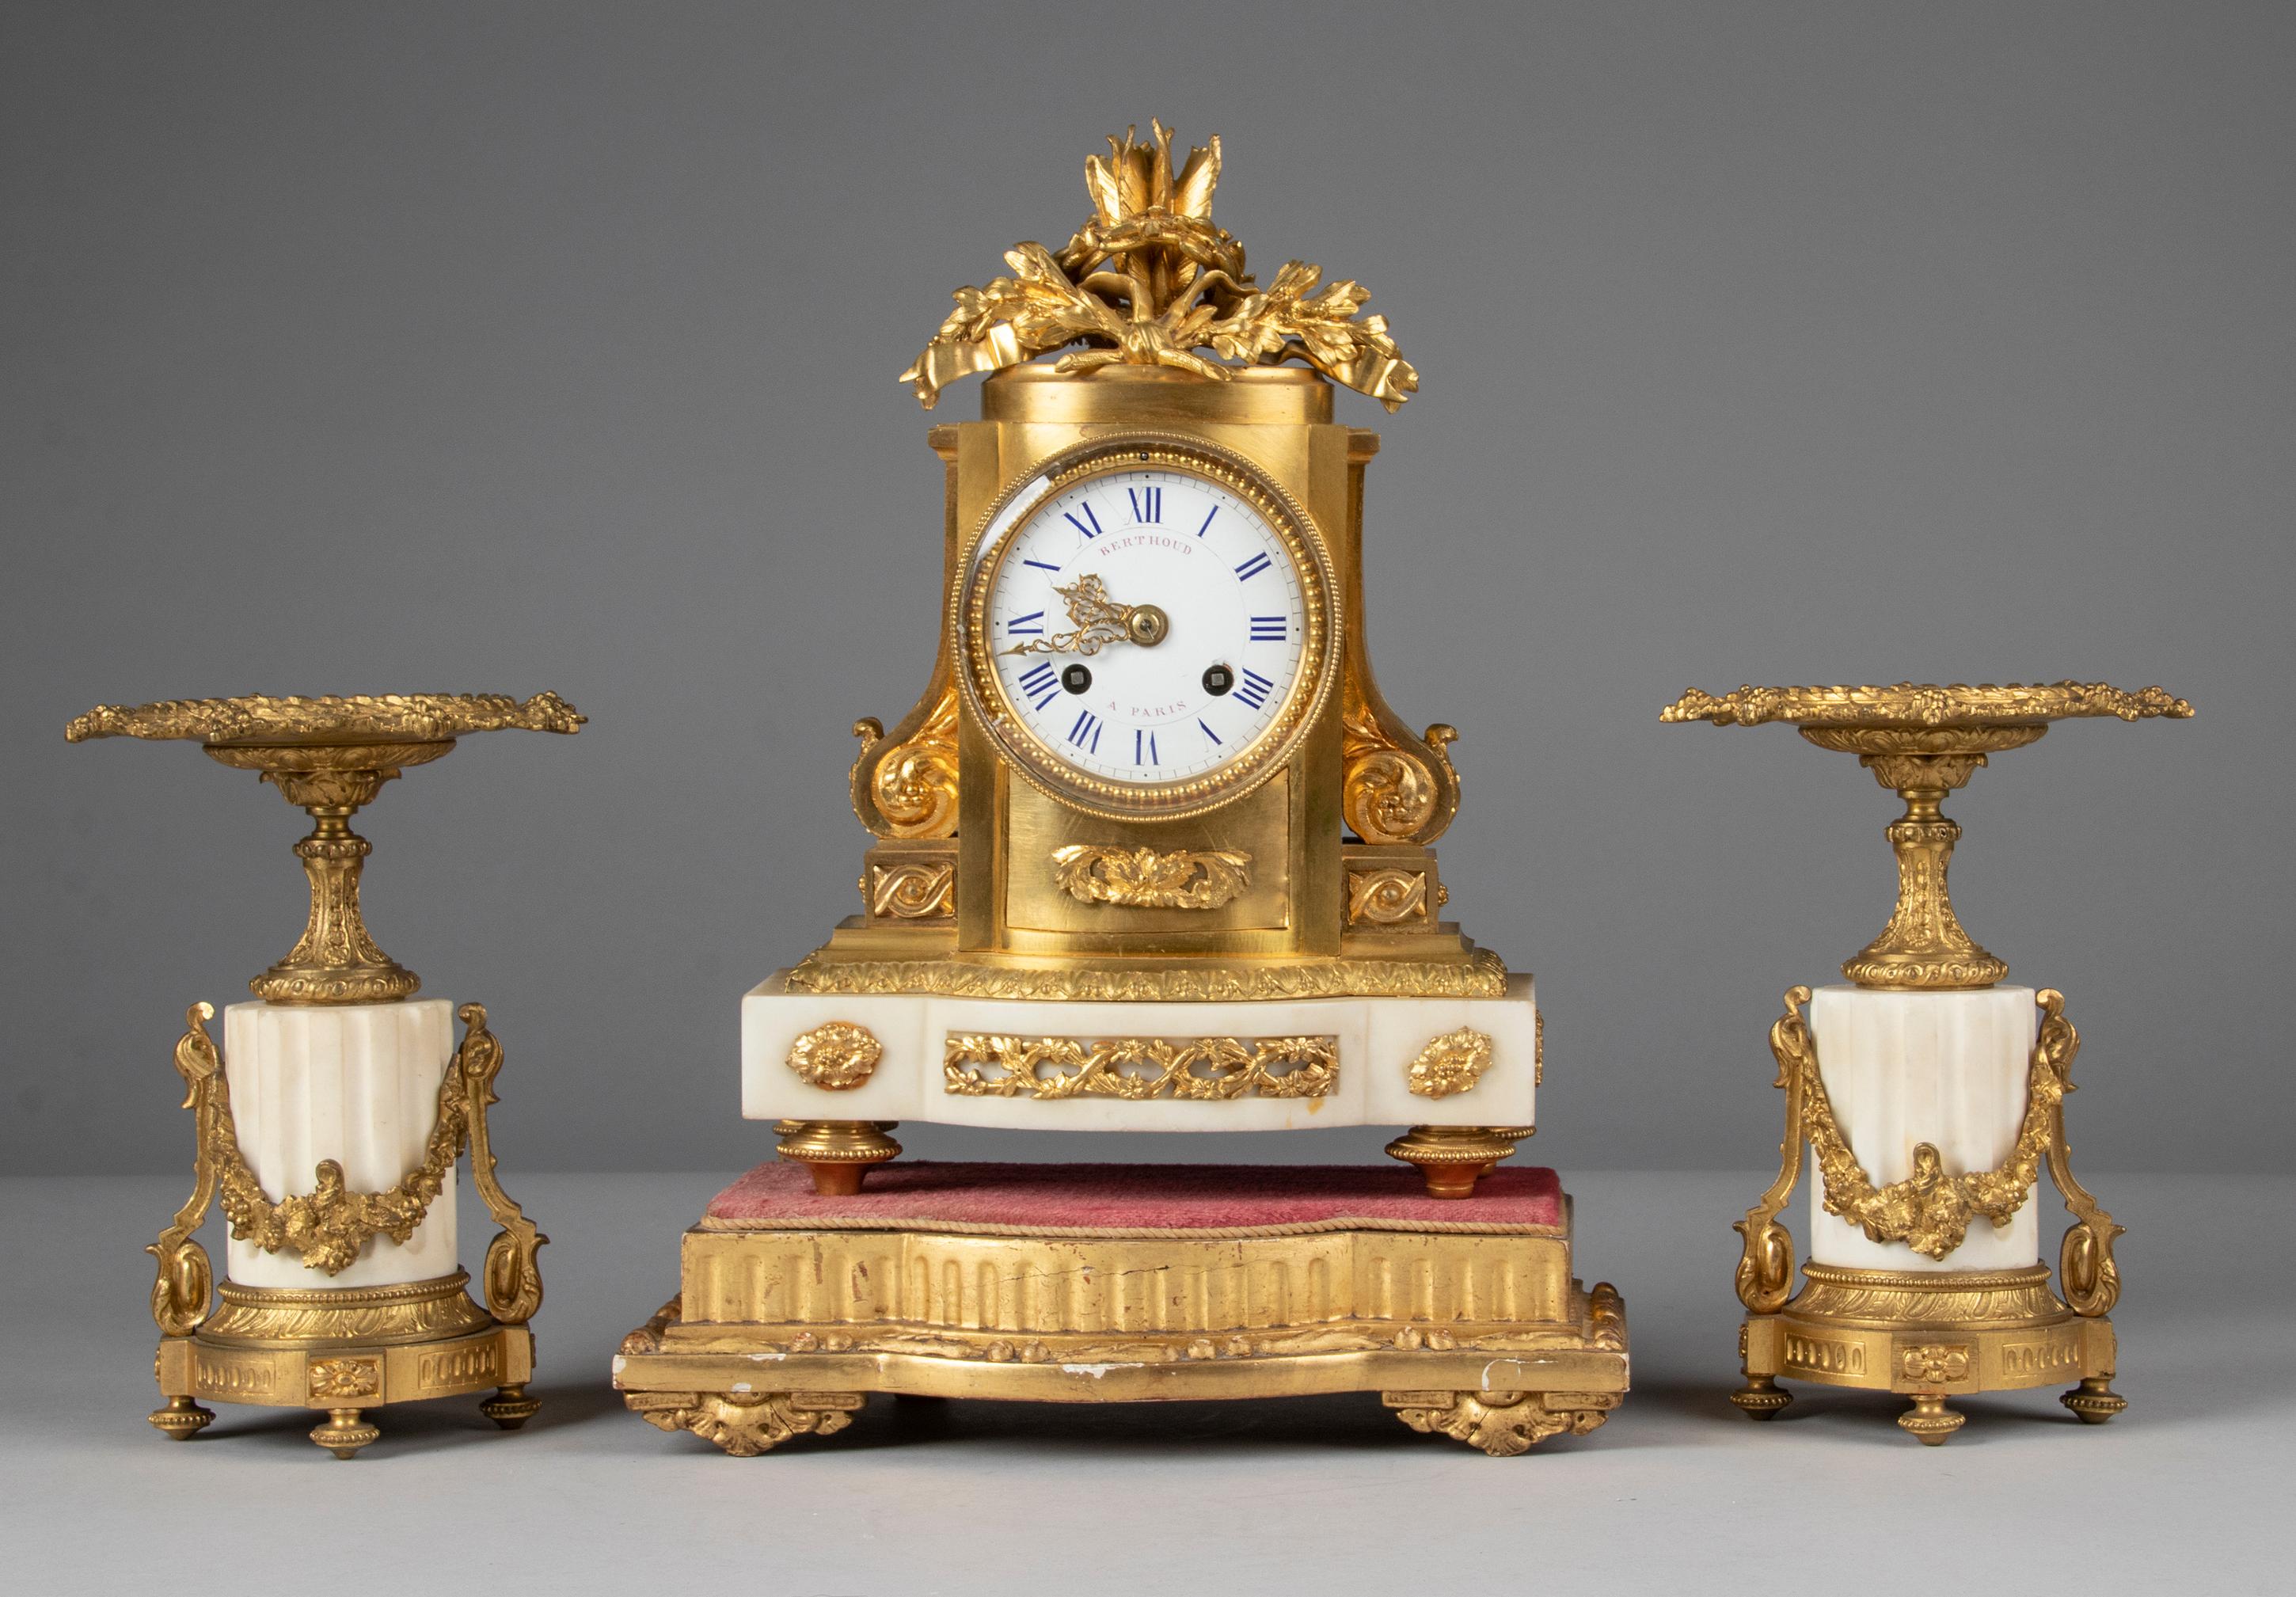 Pendule de cheminée raffinée de style Louis XVI et candélabres assortis. Le boîtier est en laiton doré et ornements moulés en bronze doré, le cadran est en fer émaillé. Whiting sur un socle en marbre blanc. Richement décoré d'ornements